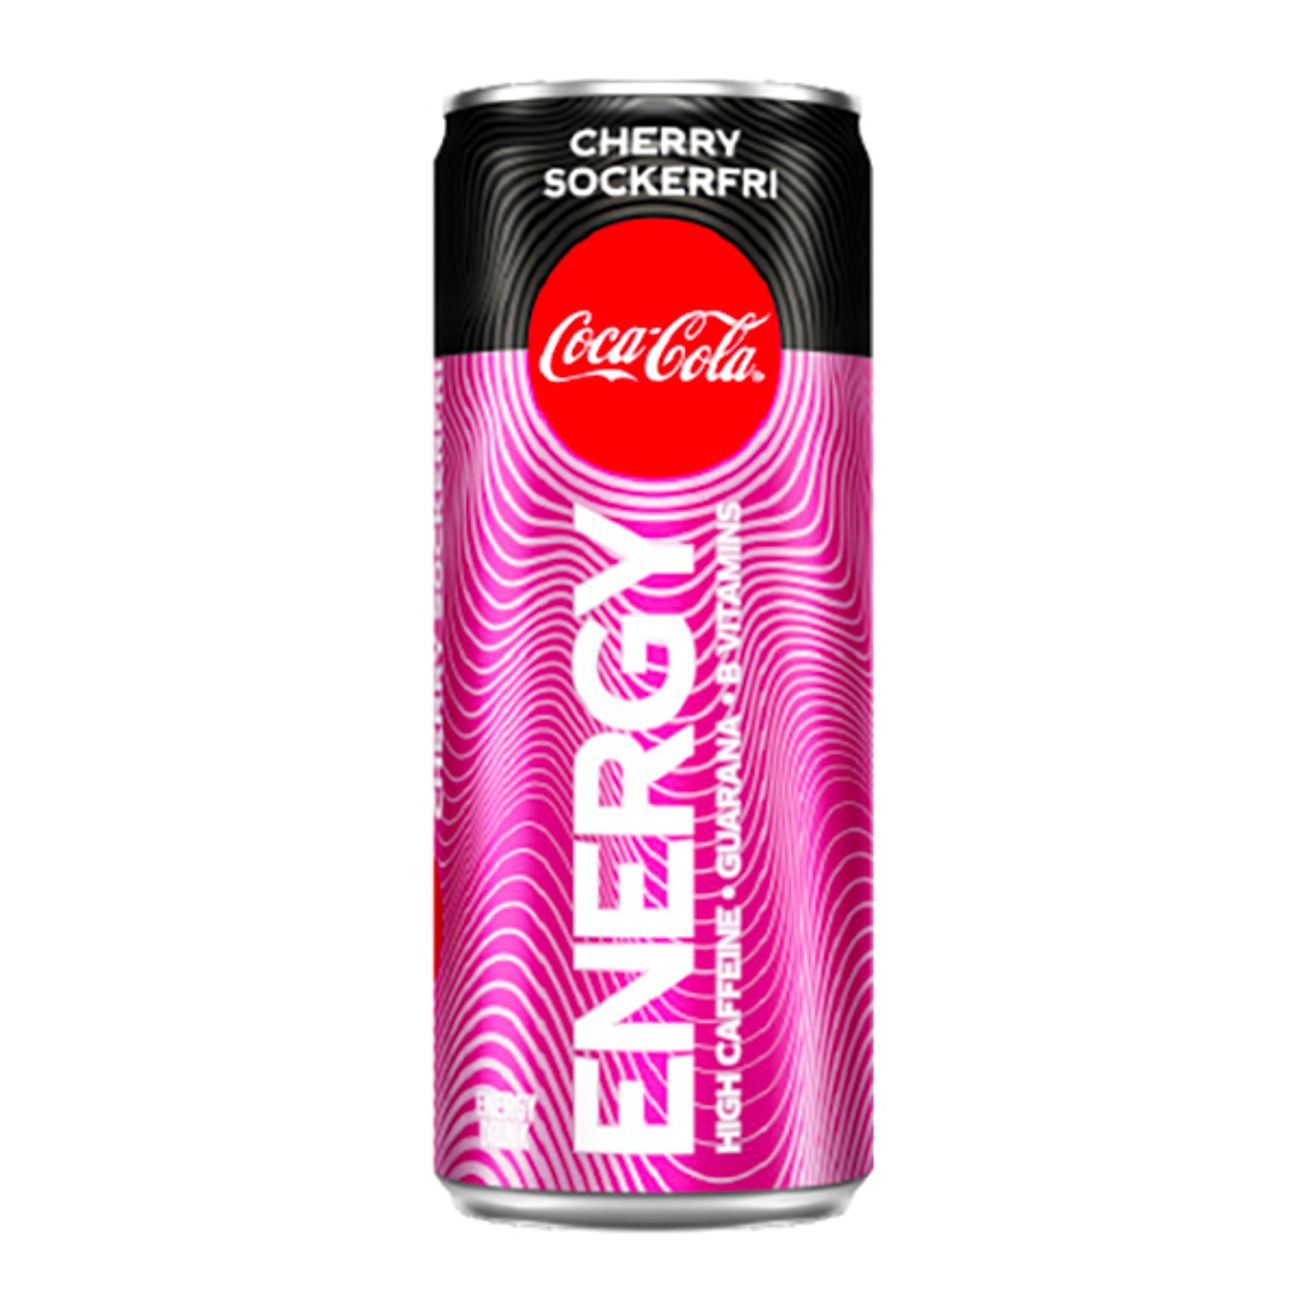 coca-cola-energy-sockerfri-cherry-73530-1